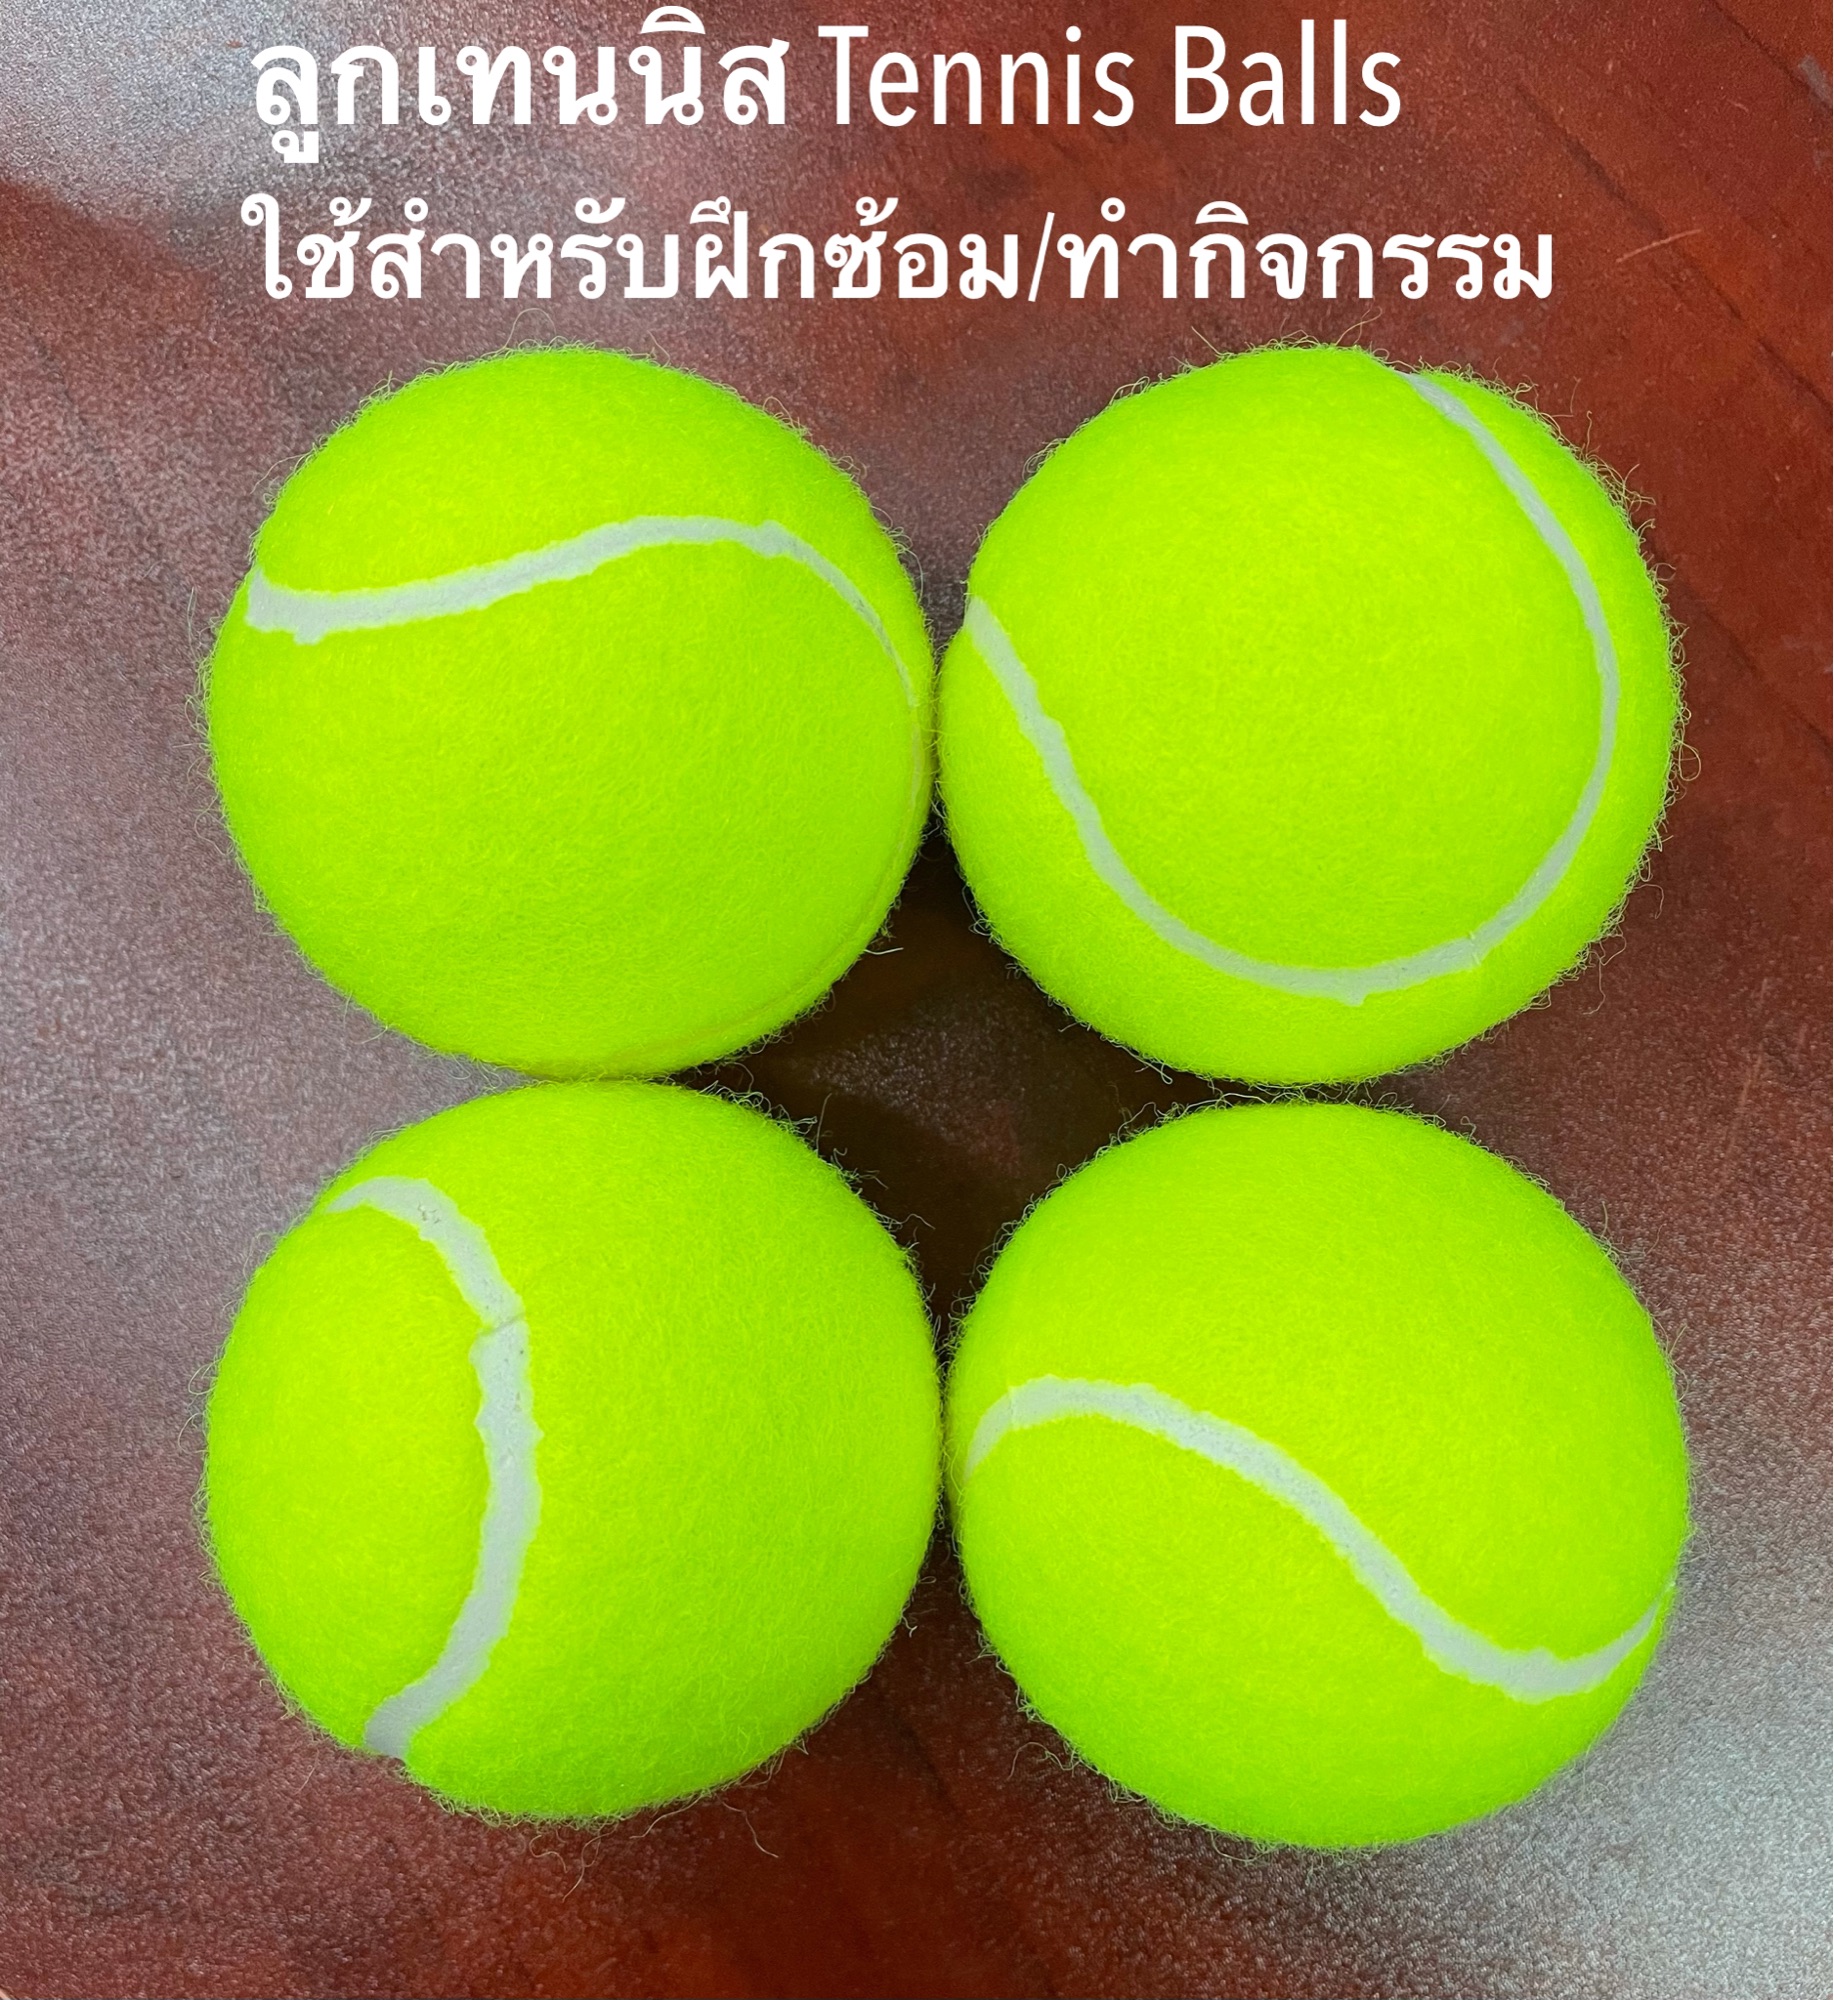 ลูกเทนนิส Tennis Balls NEW (4 balls) ใช้ฝึกซ้อมเทนนิสสำหรับผู้เล่นใหม่ ฝึกพื้นฐาน หรือใช้ทำกิจกรรมต่างๆได้